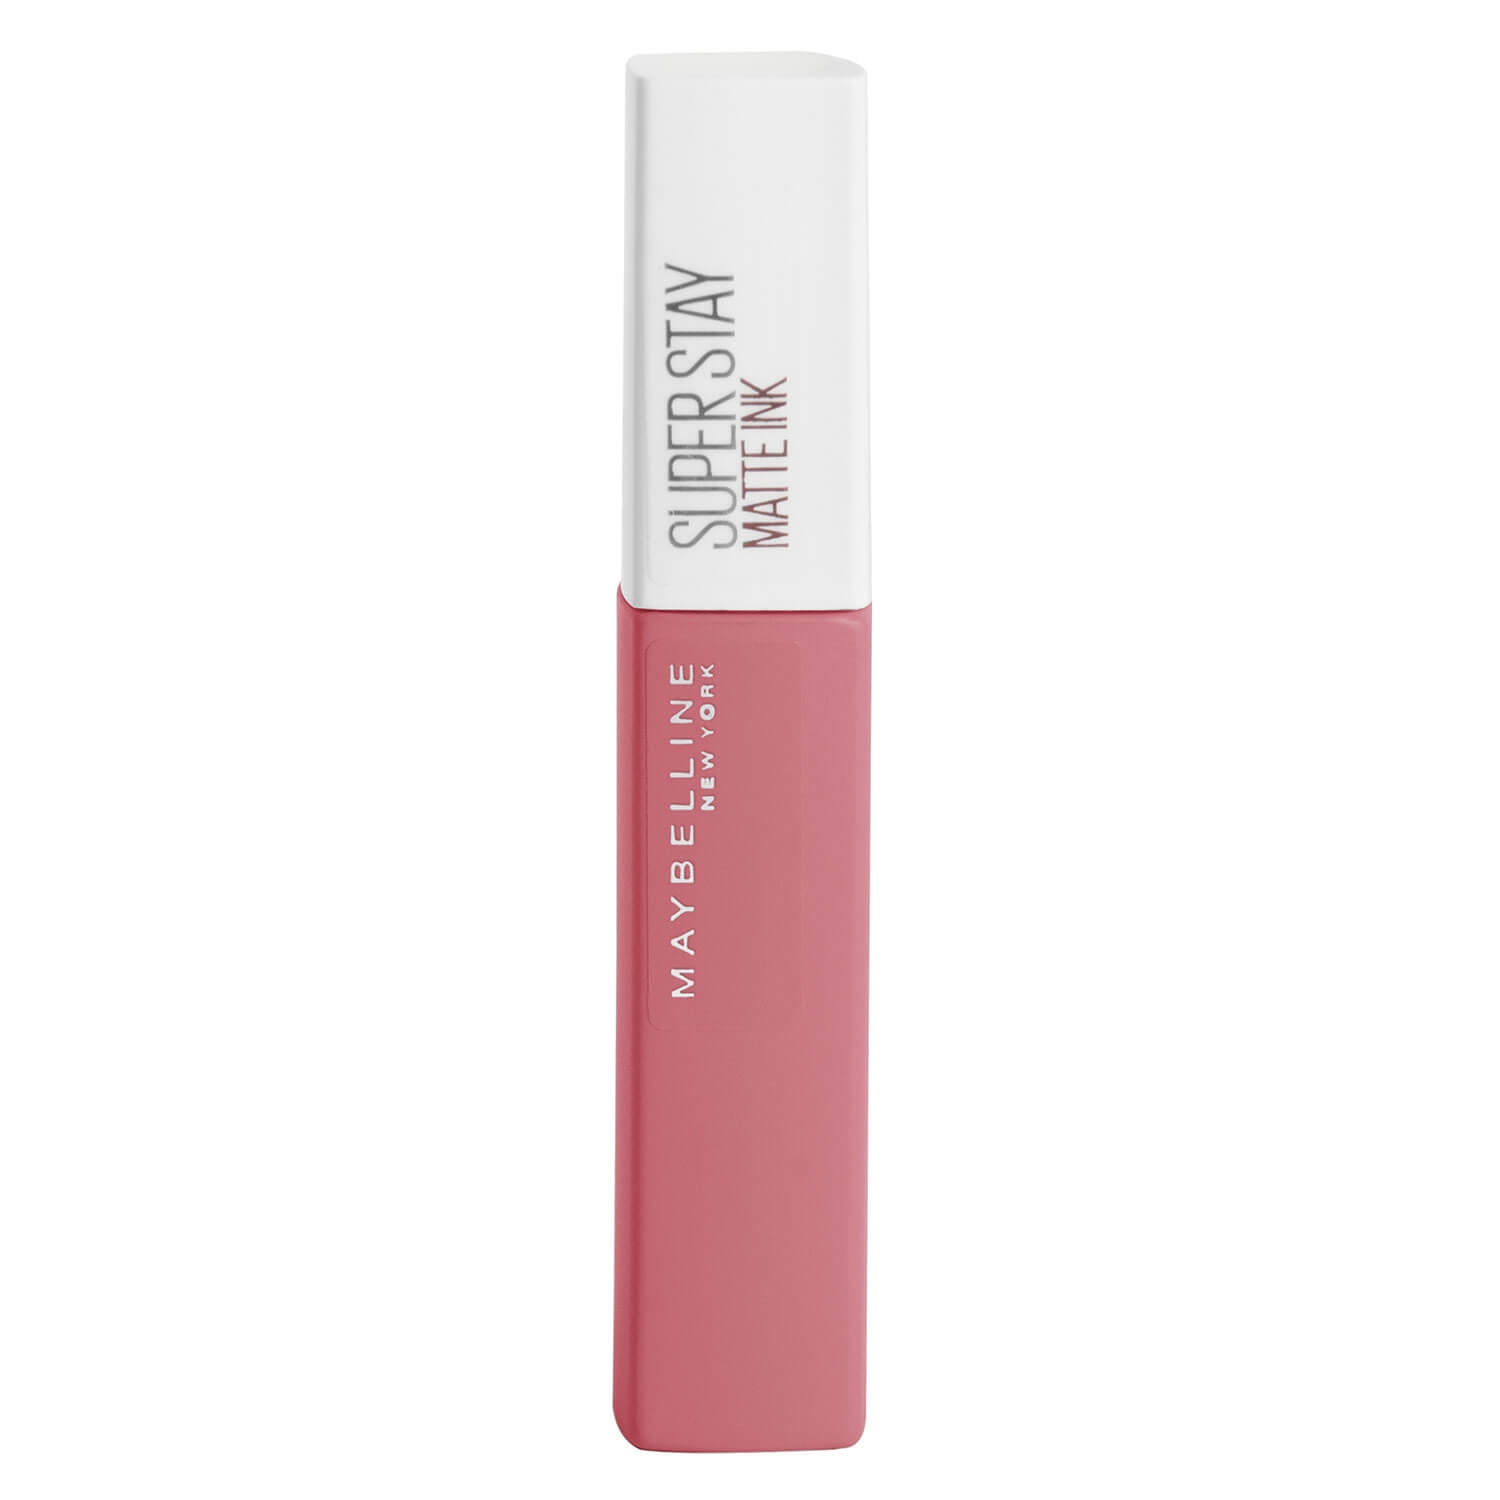 Produktbild von Maybelline NY Lips - Super Stay Matte Ink Lippenstift 155 Savant